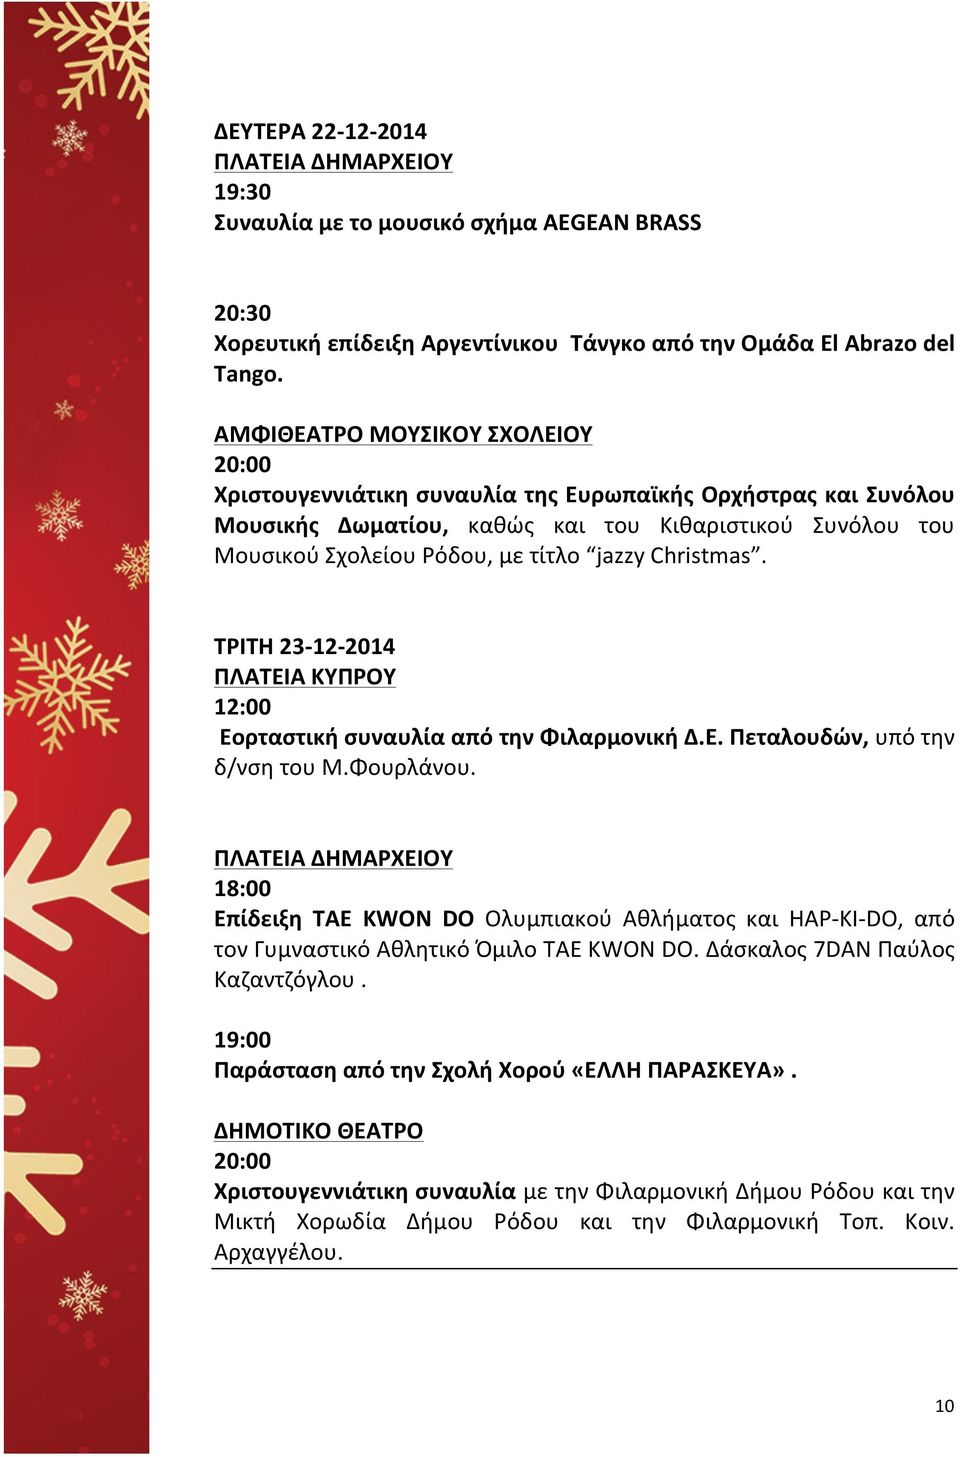 Christmas. ΤΡΙΤΗ 23-12- 2014 ΠΛΑΤΕΙΑ ΚΥΠΡΟΥ 12:00 Εορταστική συναυλία από την Φιλαρμονική Δ.Ε. Πεταλουδών, υπό την δ/νση του Μ.Φουρλάνου.